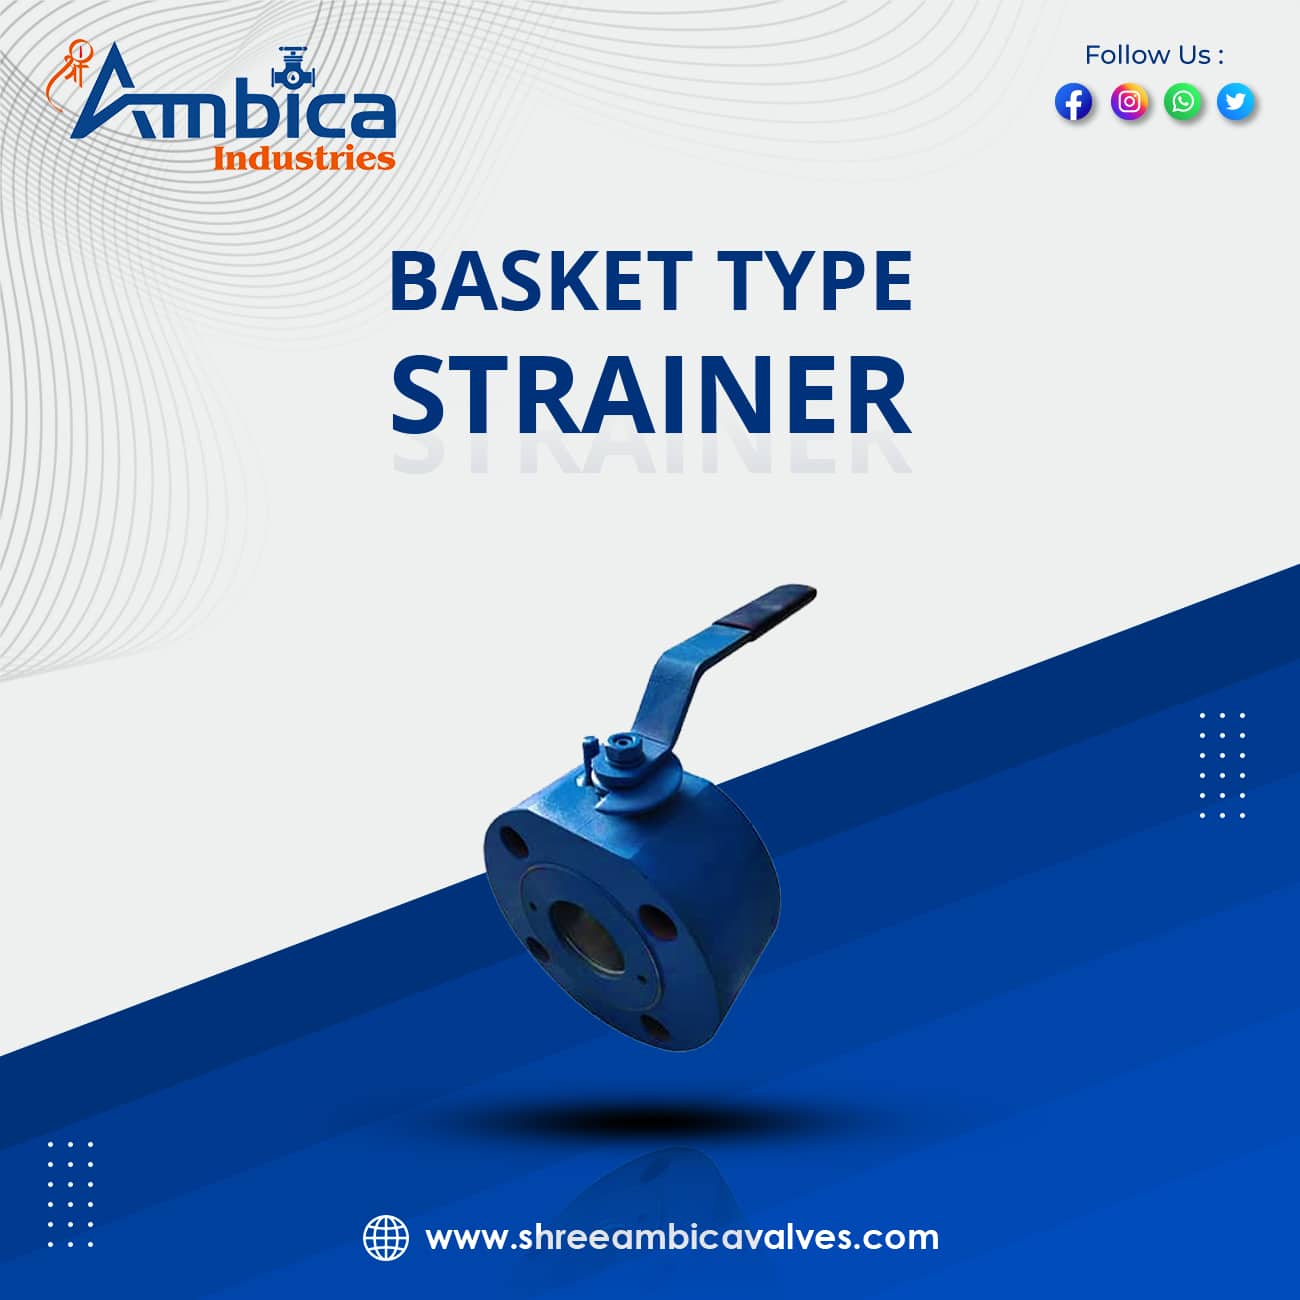 Basket Type Strainer